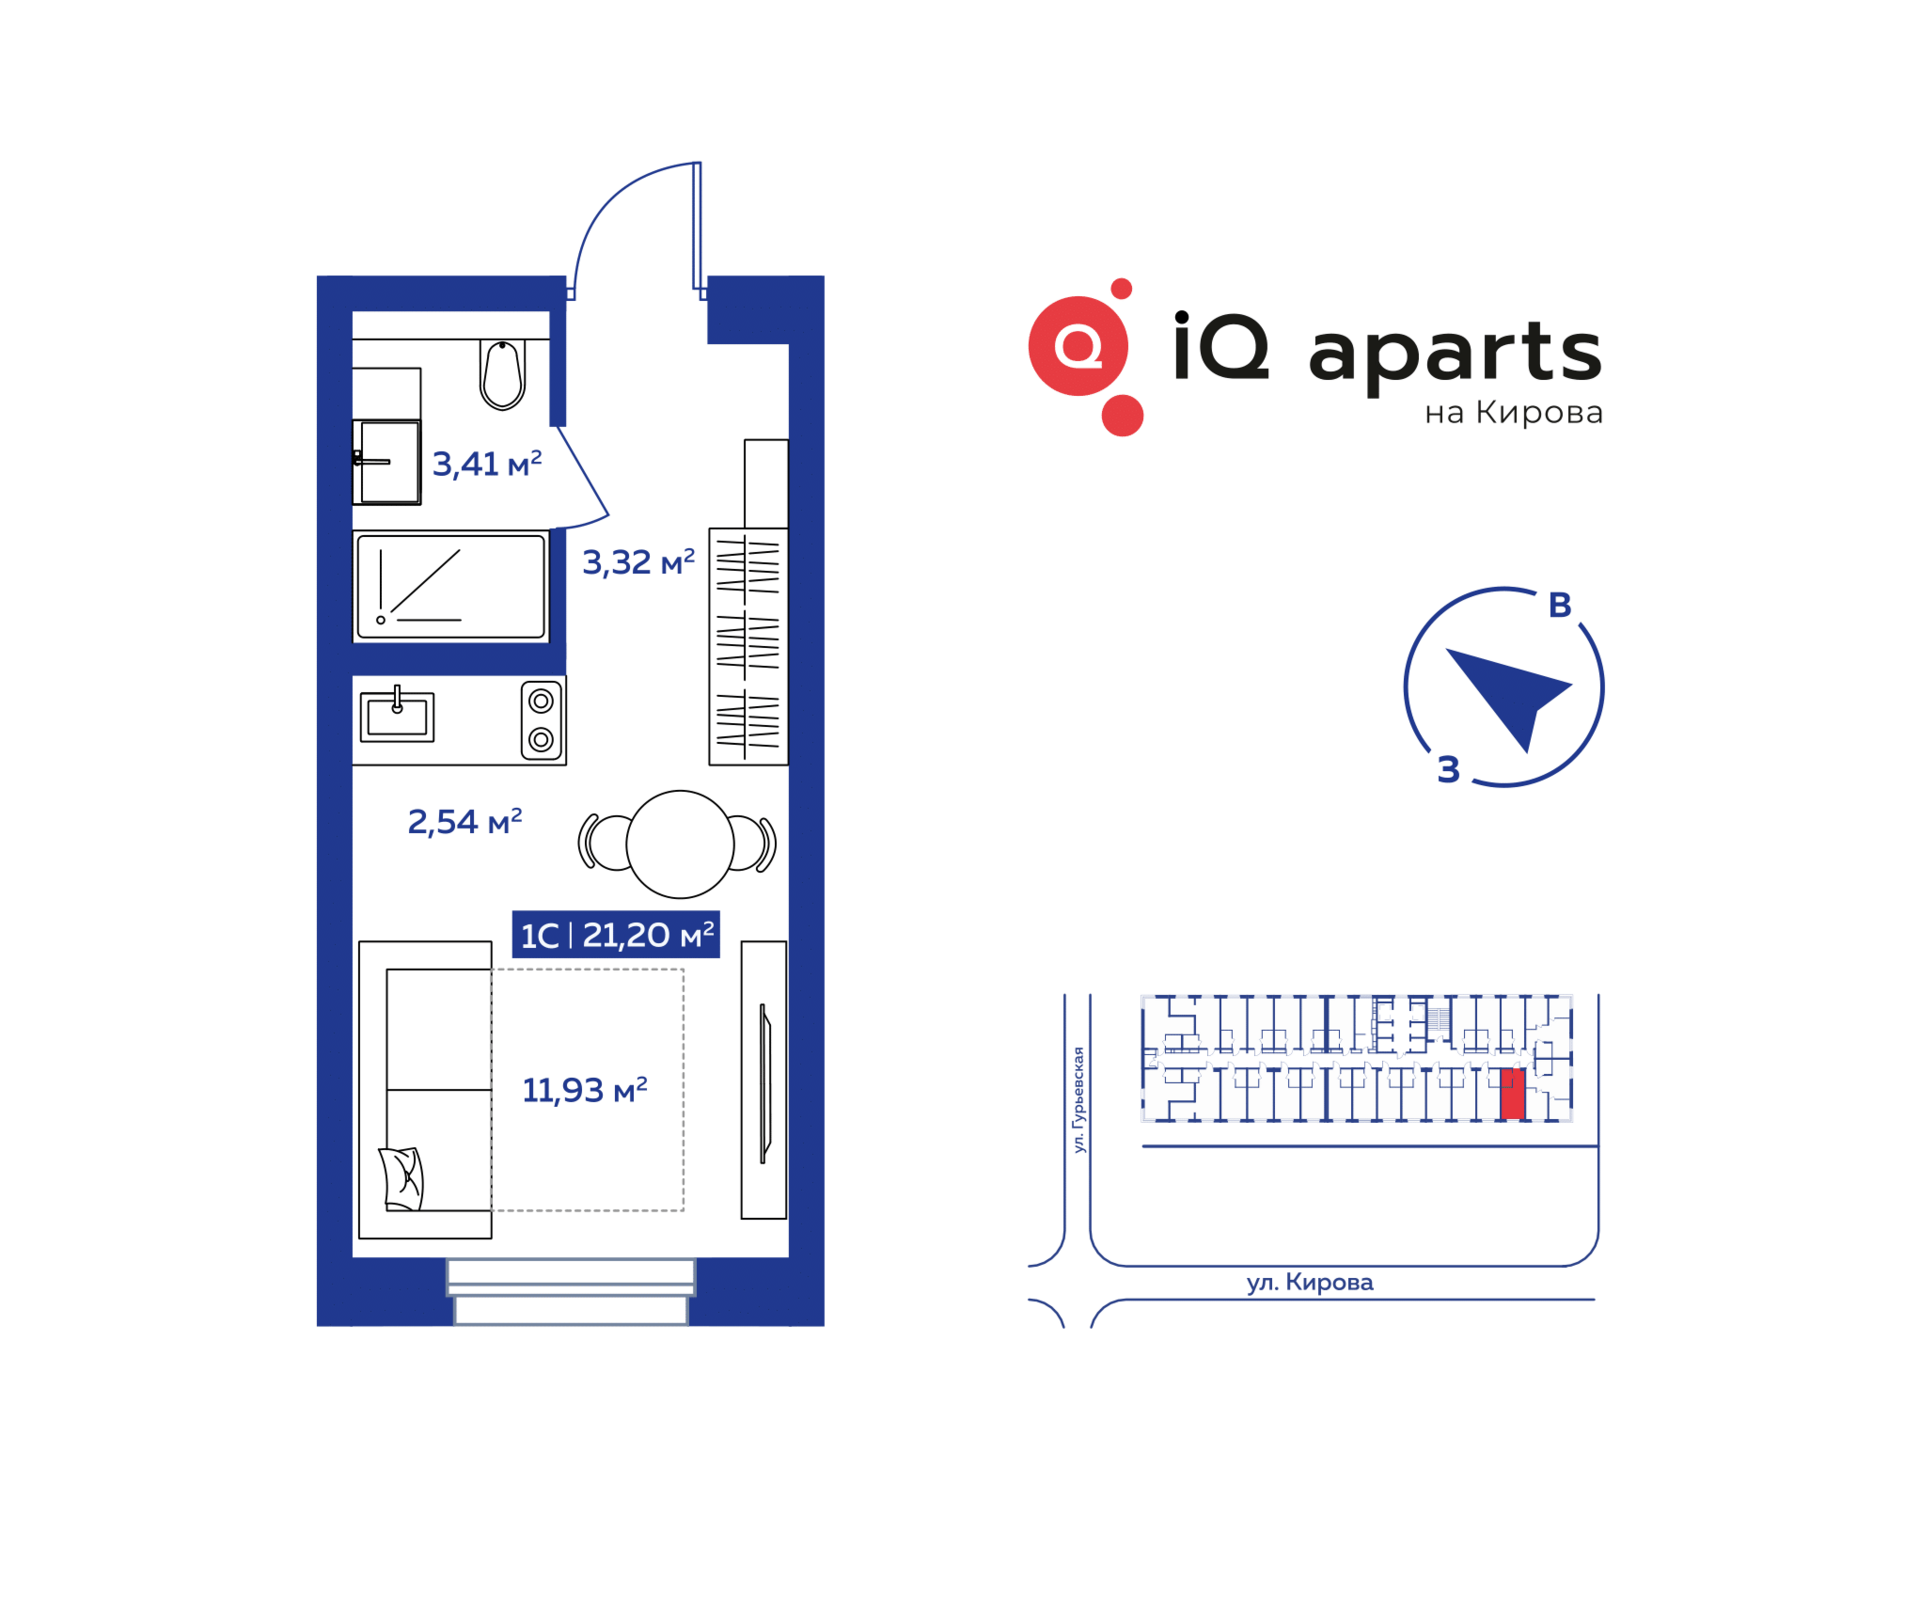 1-комнатная квартира 21.34м2 ЖК IQ Aparts